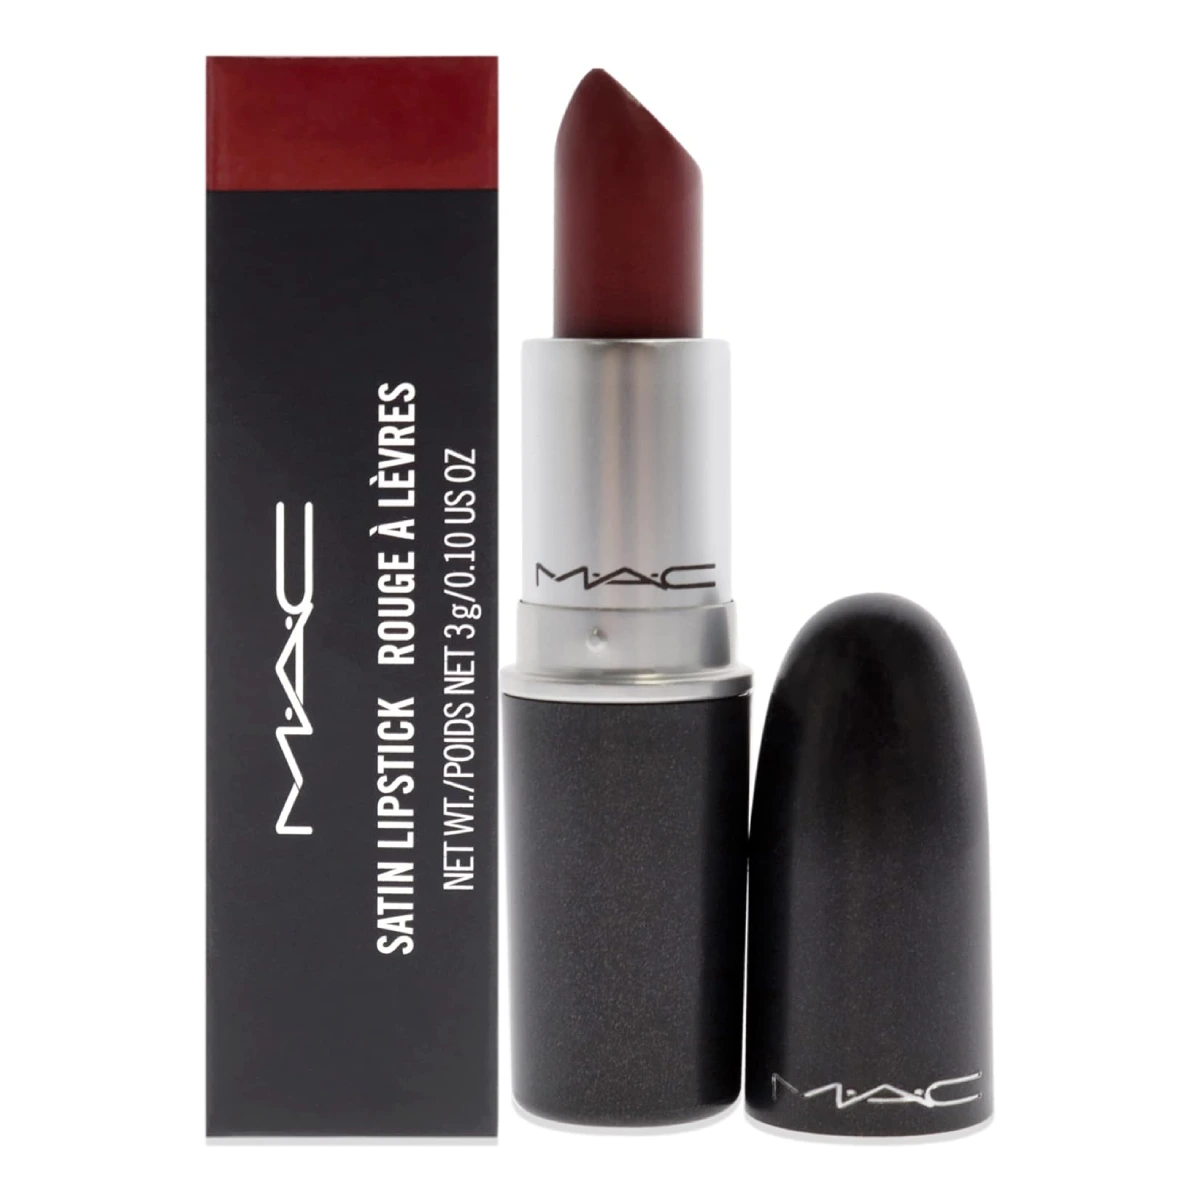 MAC Satin Lipstick - A vibrant lipstick tube against a white background.